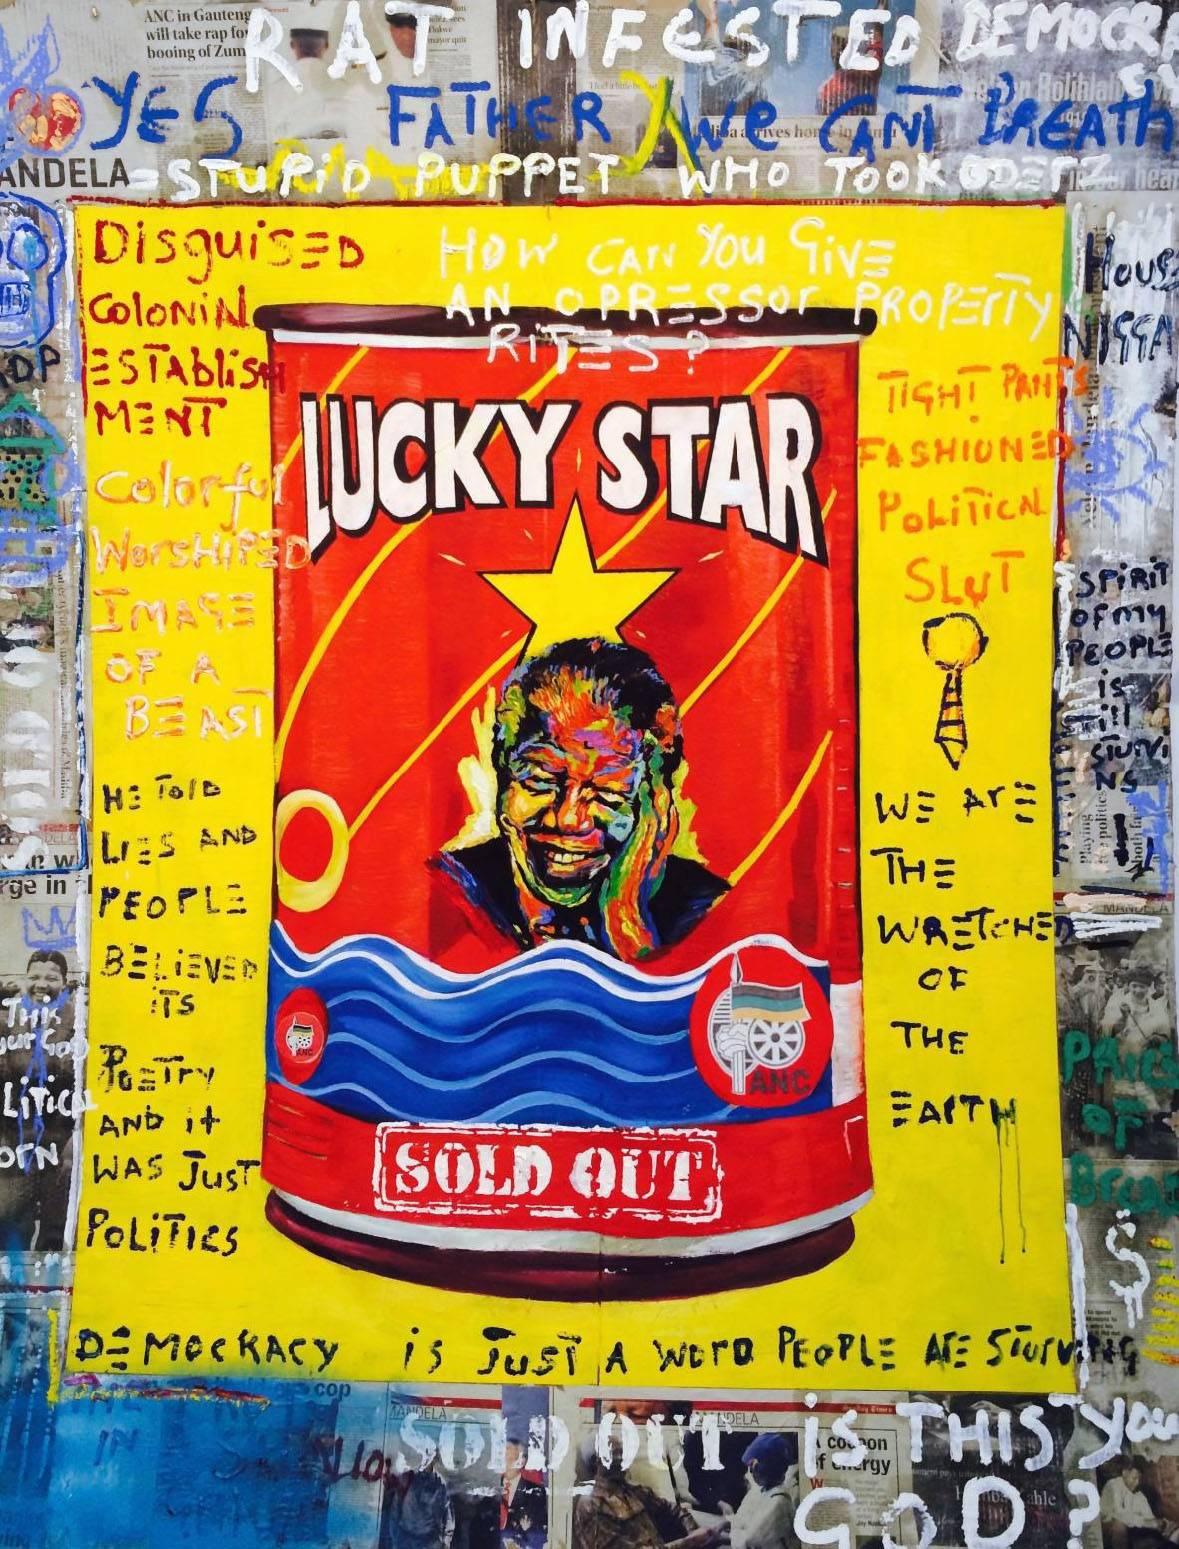 Lucky Star: Mandela (Yellow) - Mixed Media Art by Ayanda Mabulu